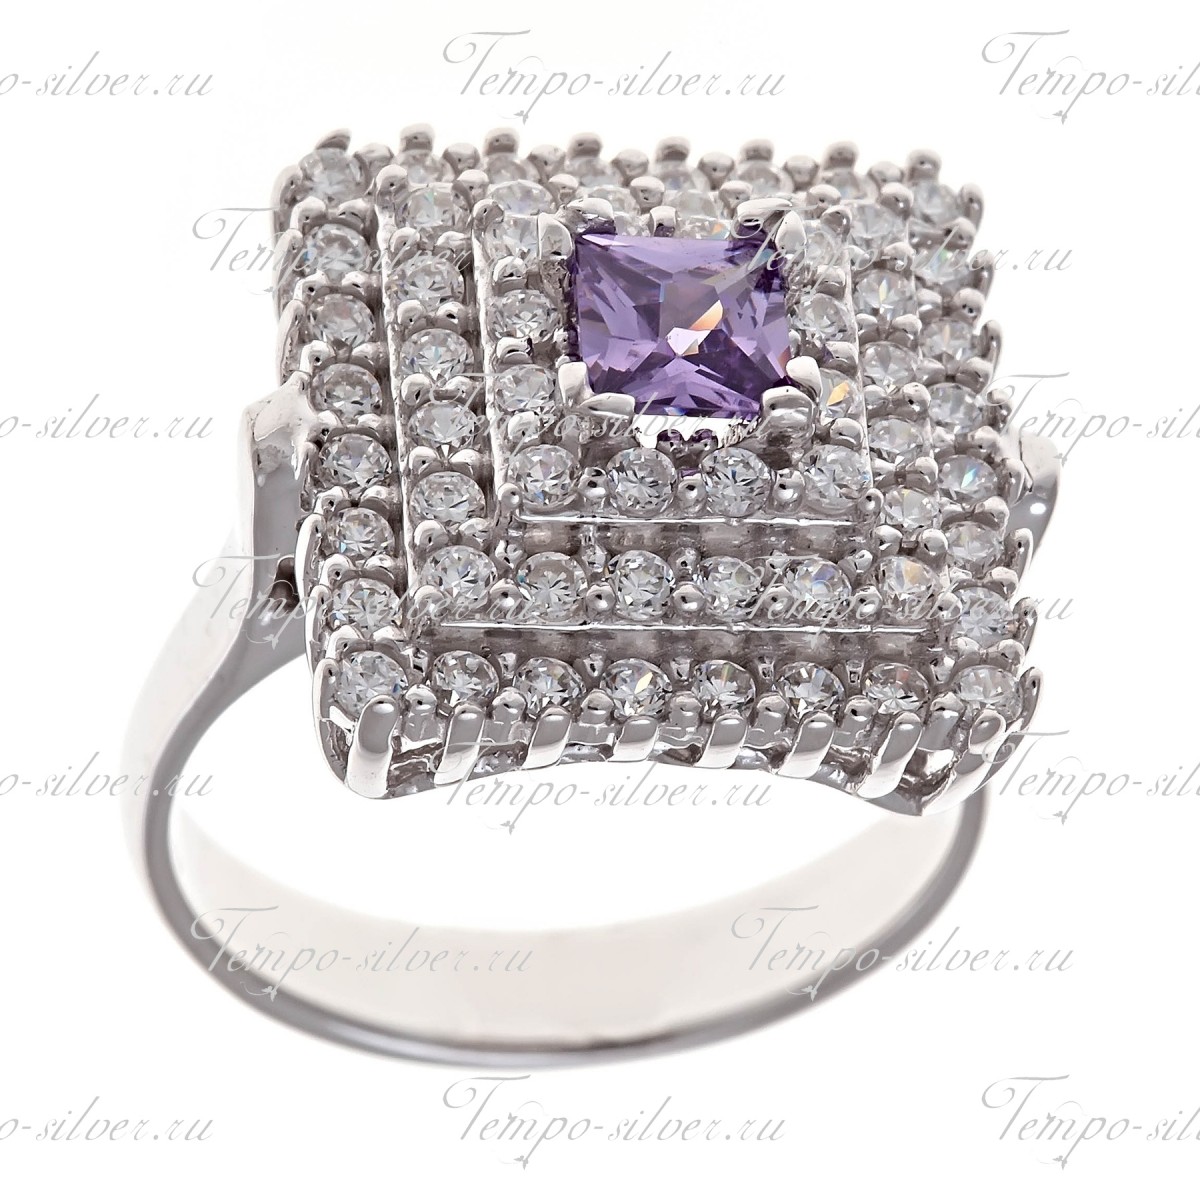 Кольцо из серебра квадратной формы с фиолетовым камнем в центре